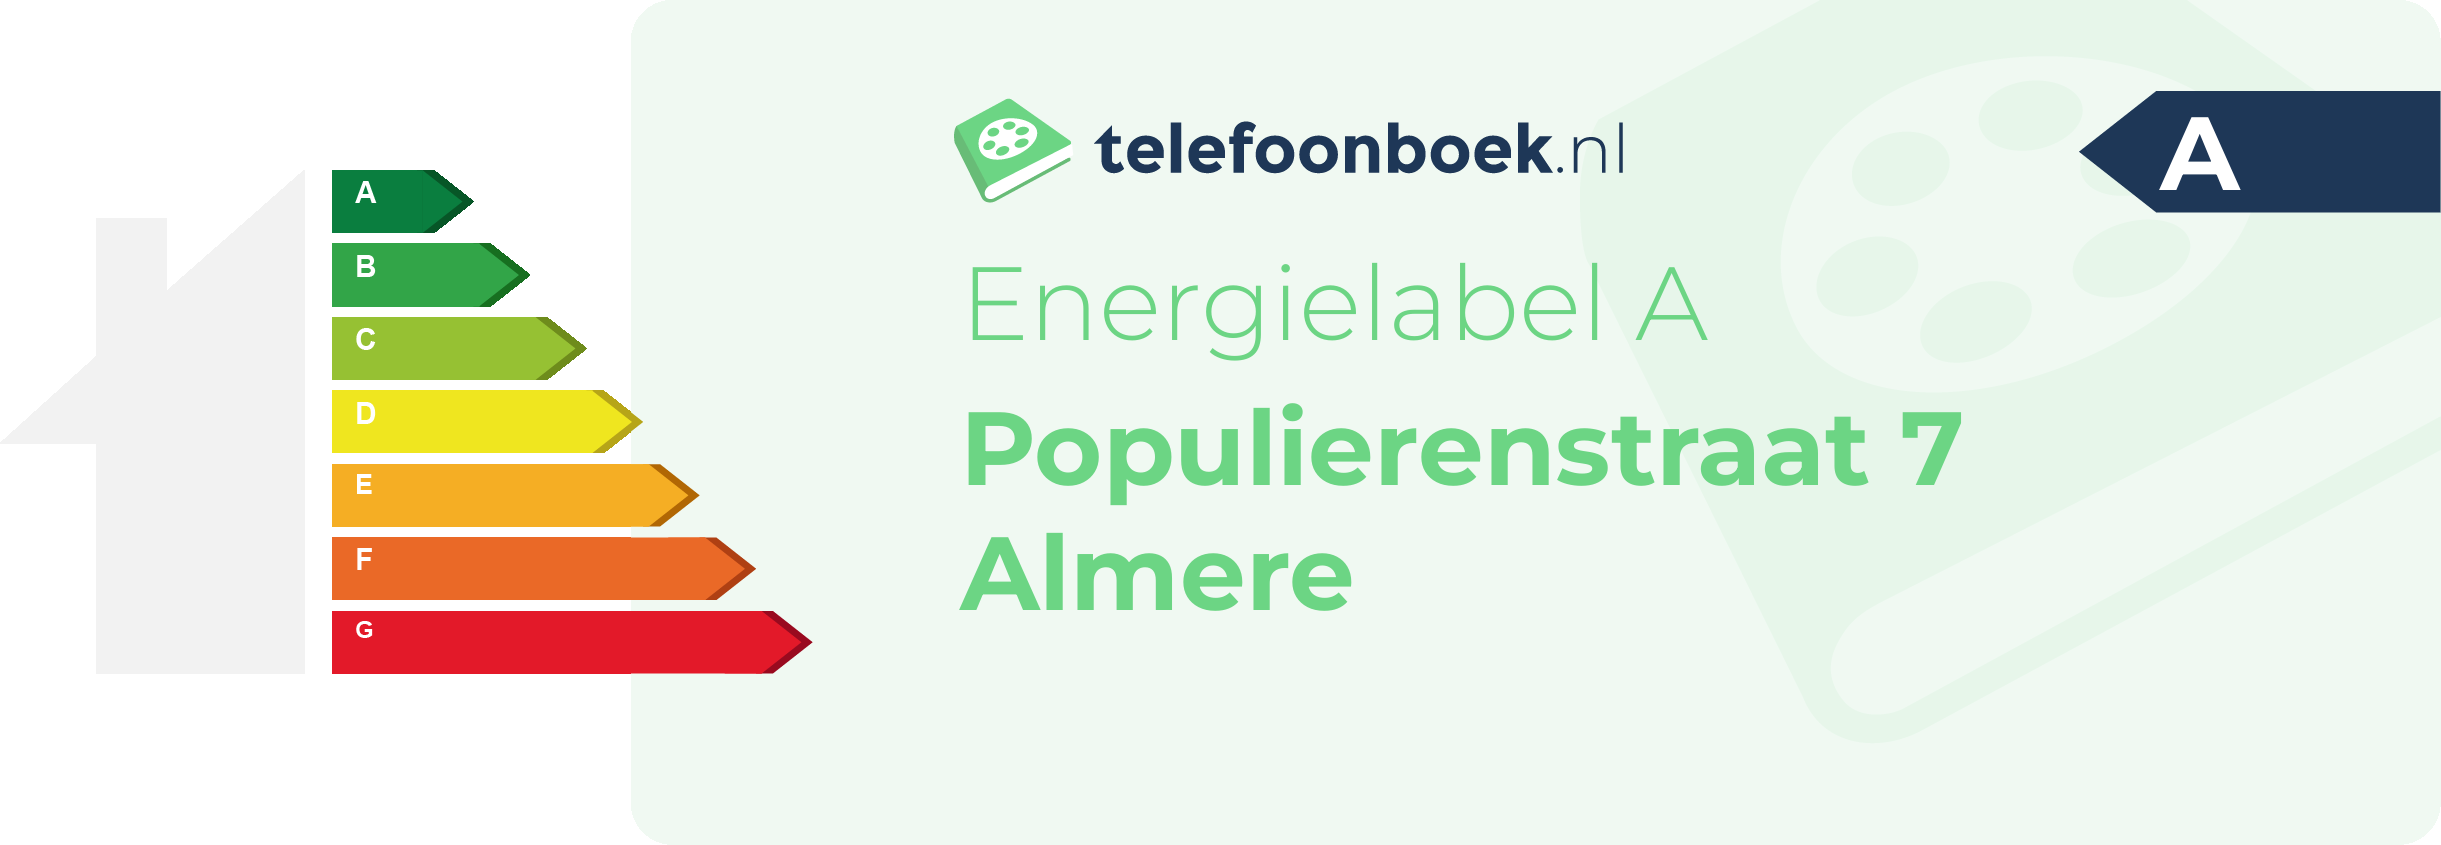 Energielabel Populierenstraat 7 Almere